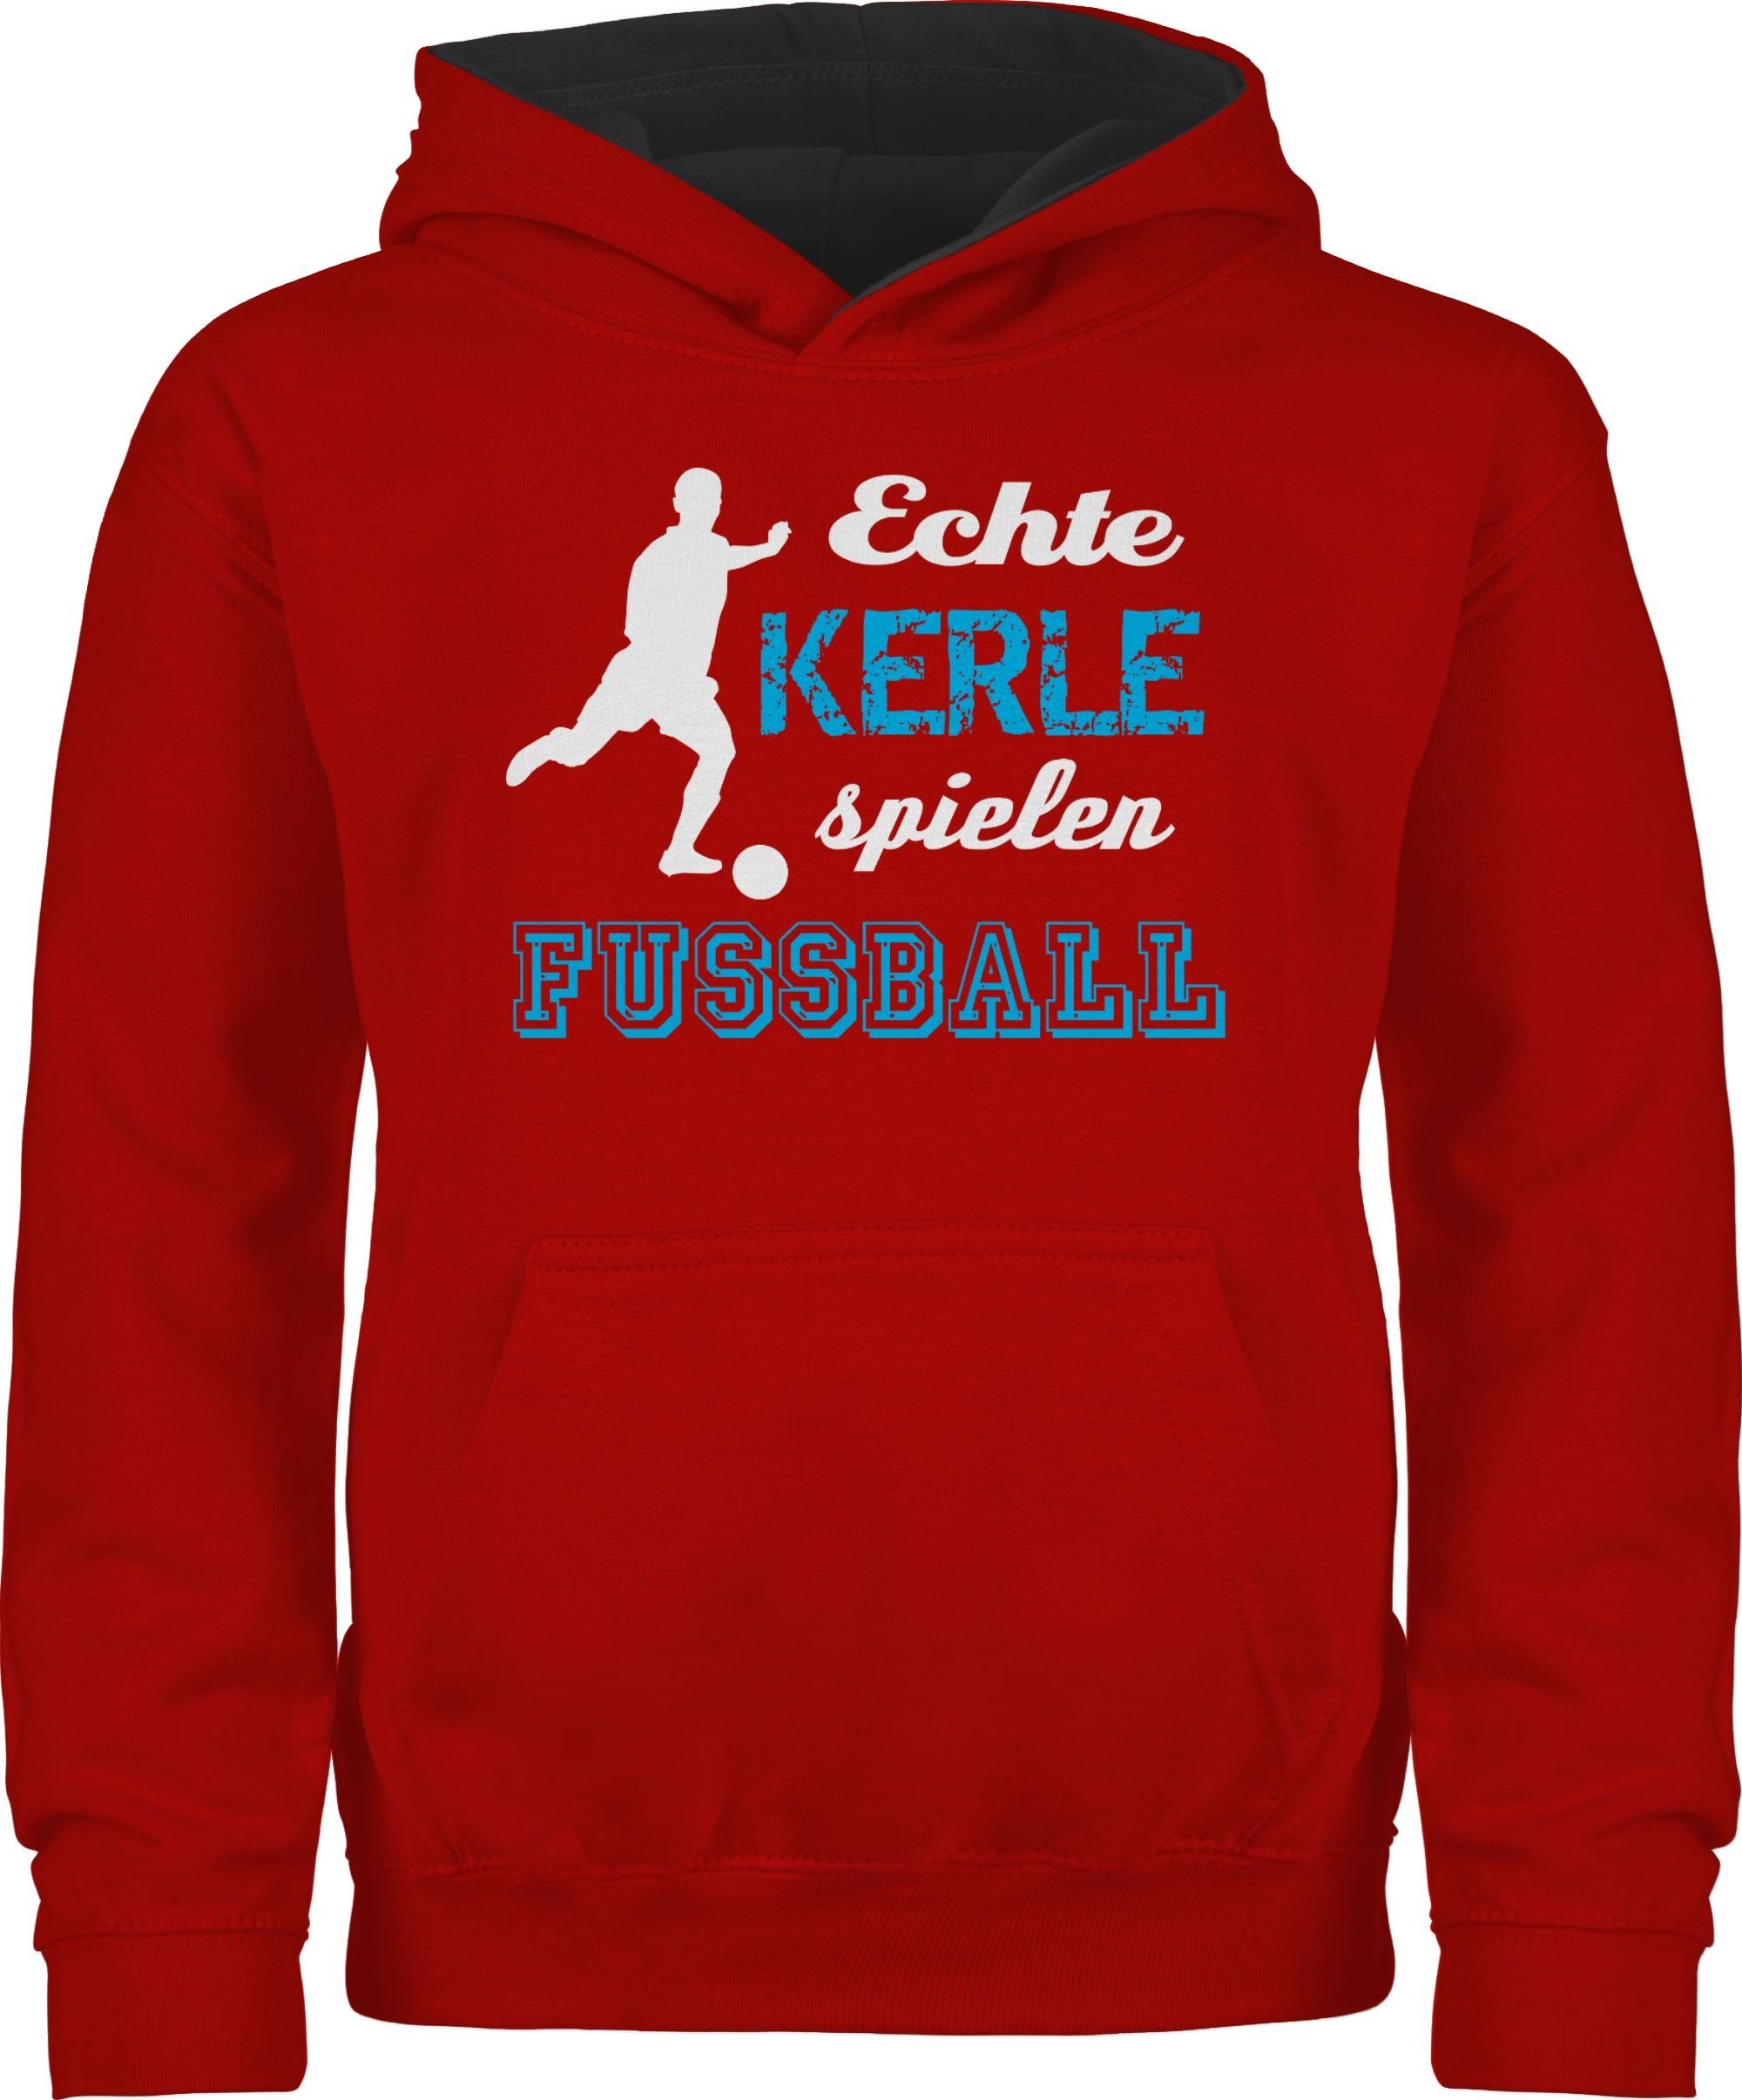 Fußball spielen Hoodie 1 Echte Sport Kleidung Kerle Kinder Shirtracer Rot/Schwarz